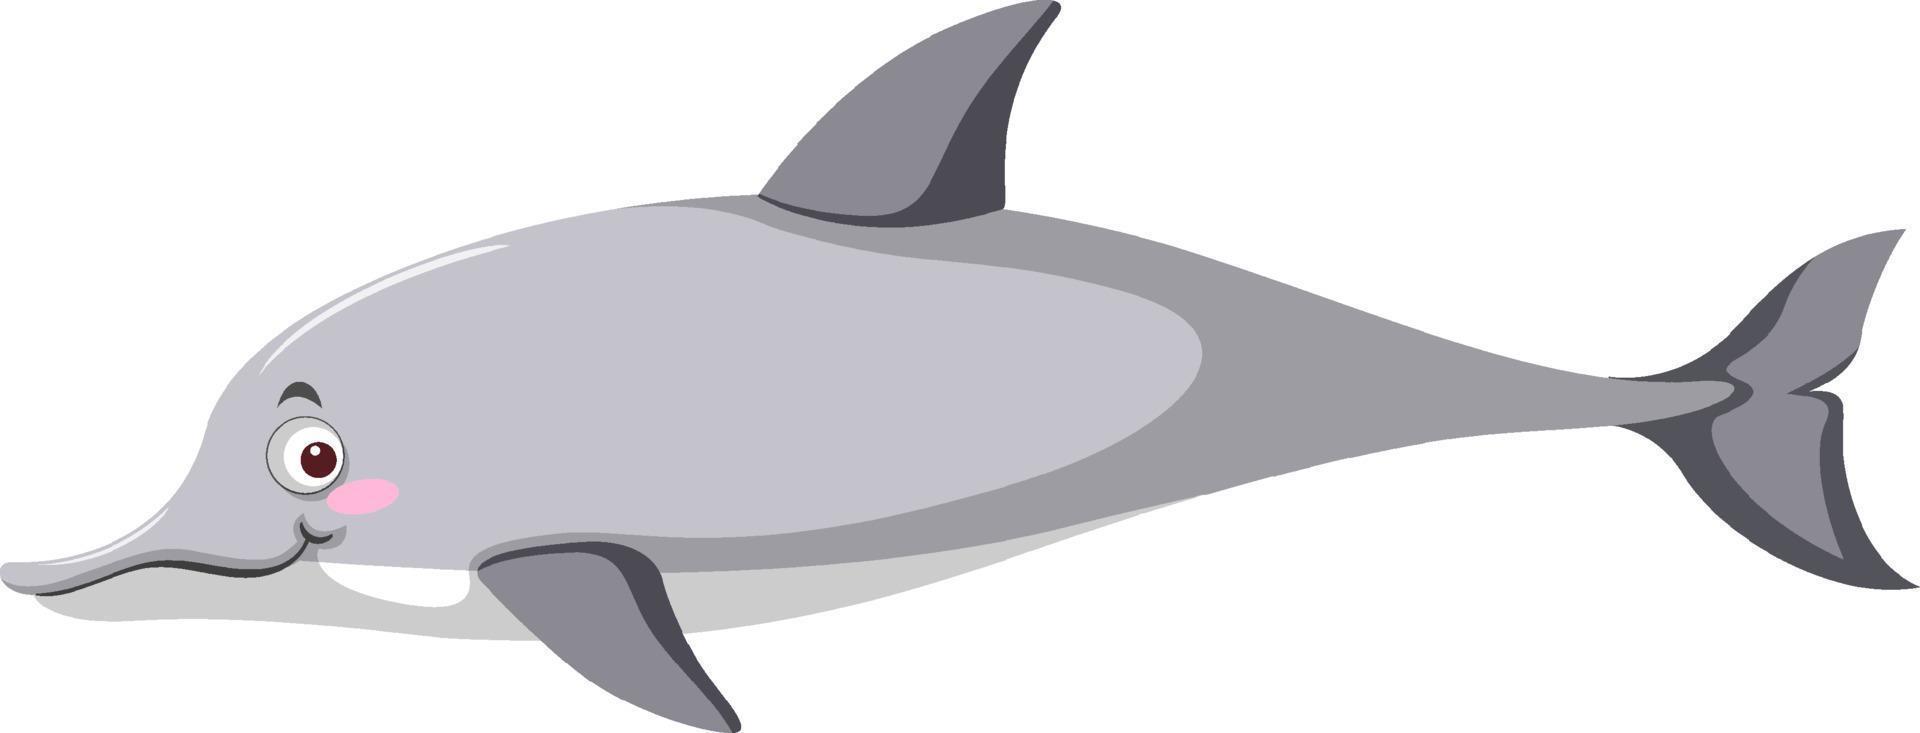 golfinho cinza em estilo cartoon vetor